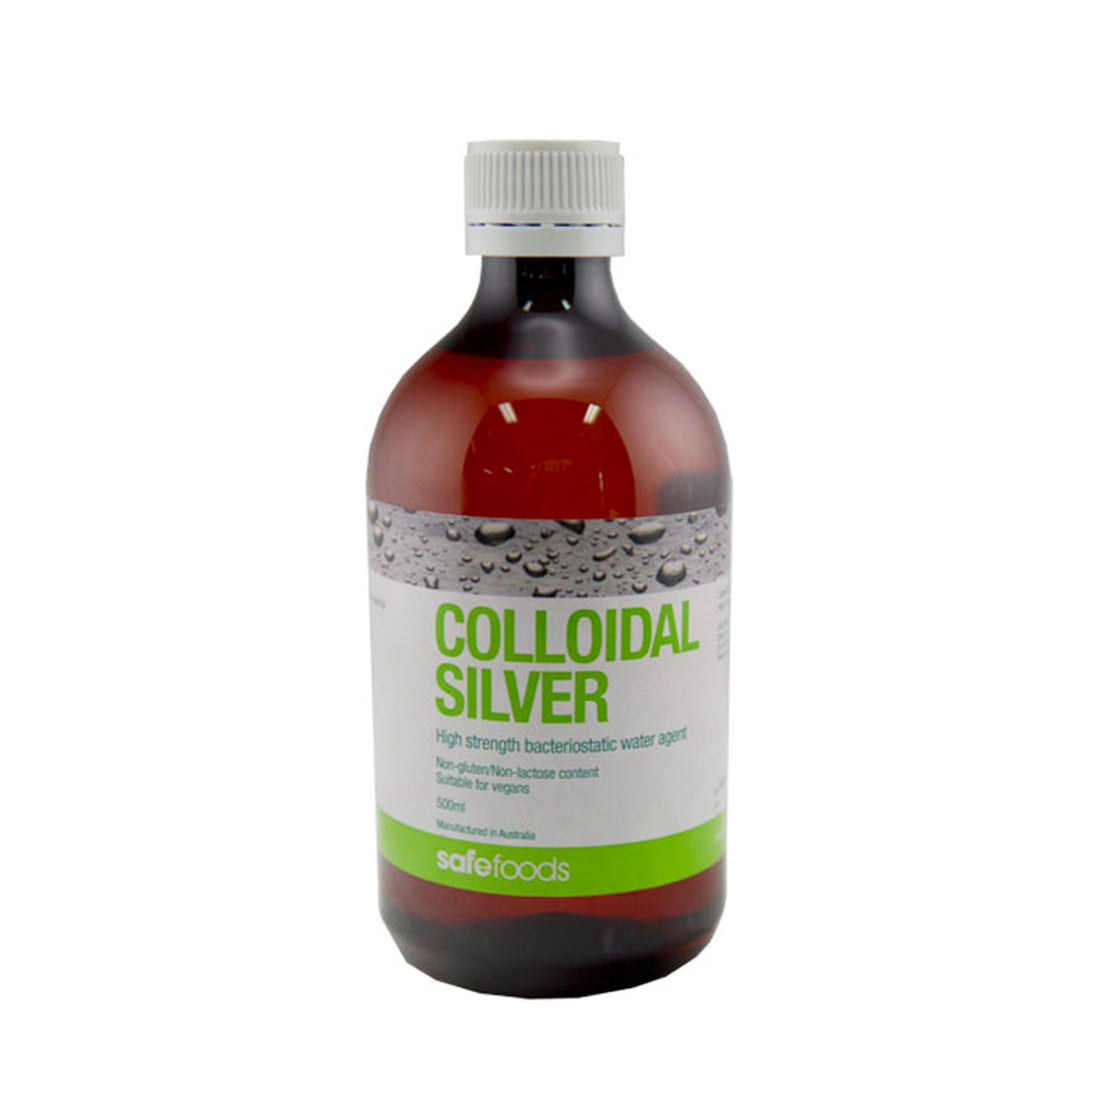 Colloidal Silver 500ml